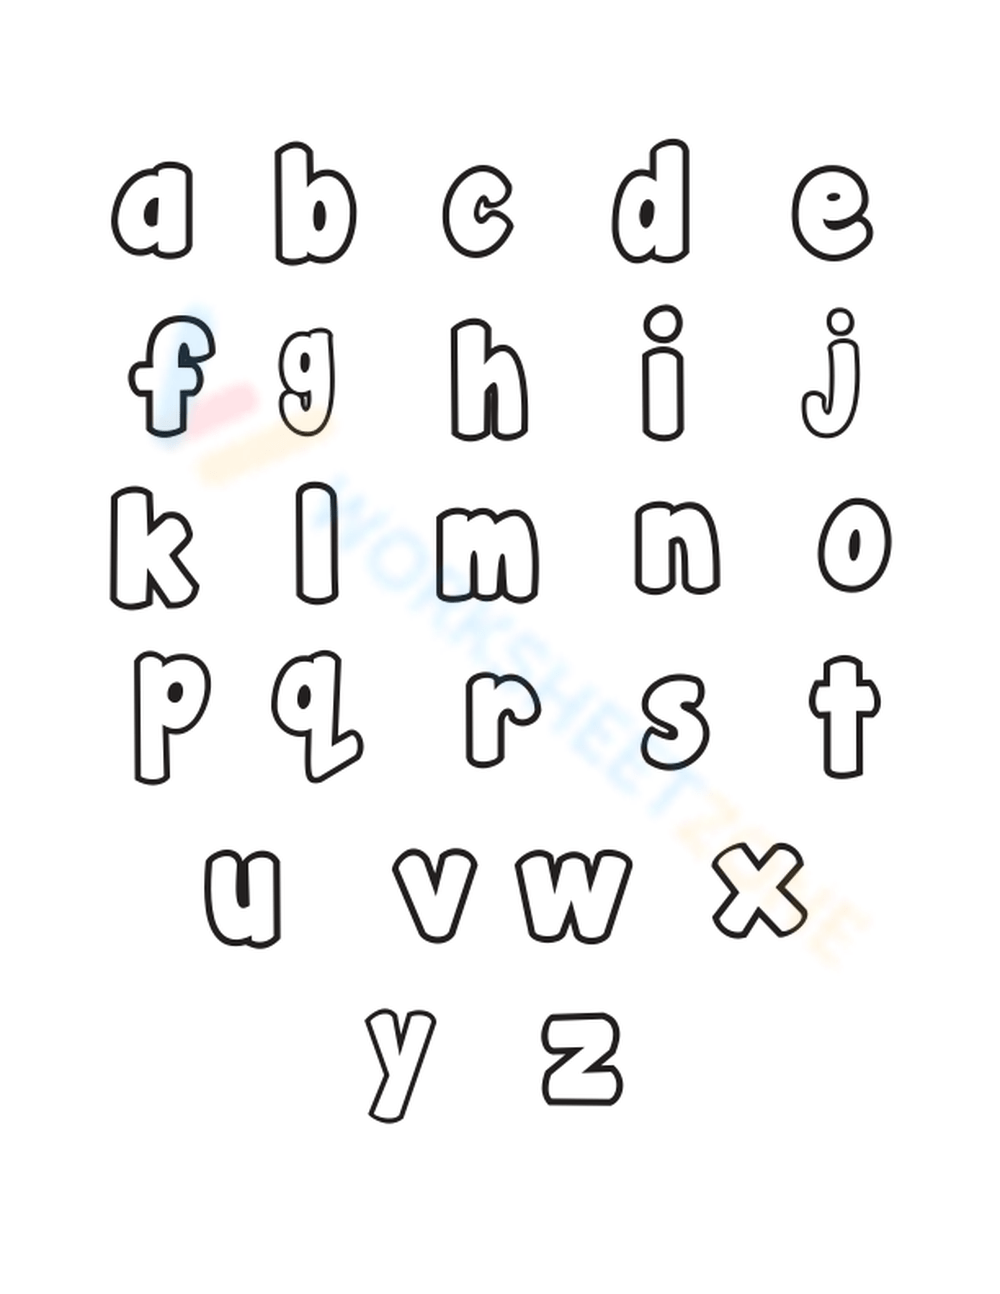 bubble letters lowercase d